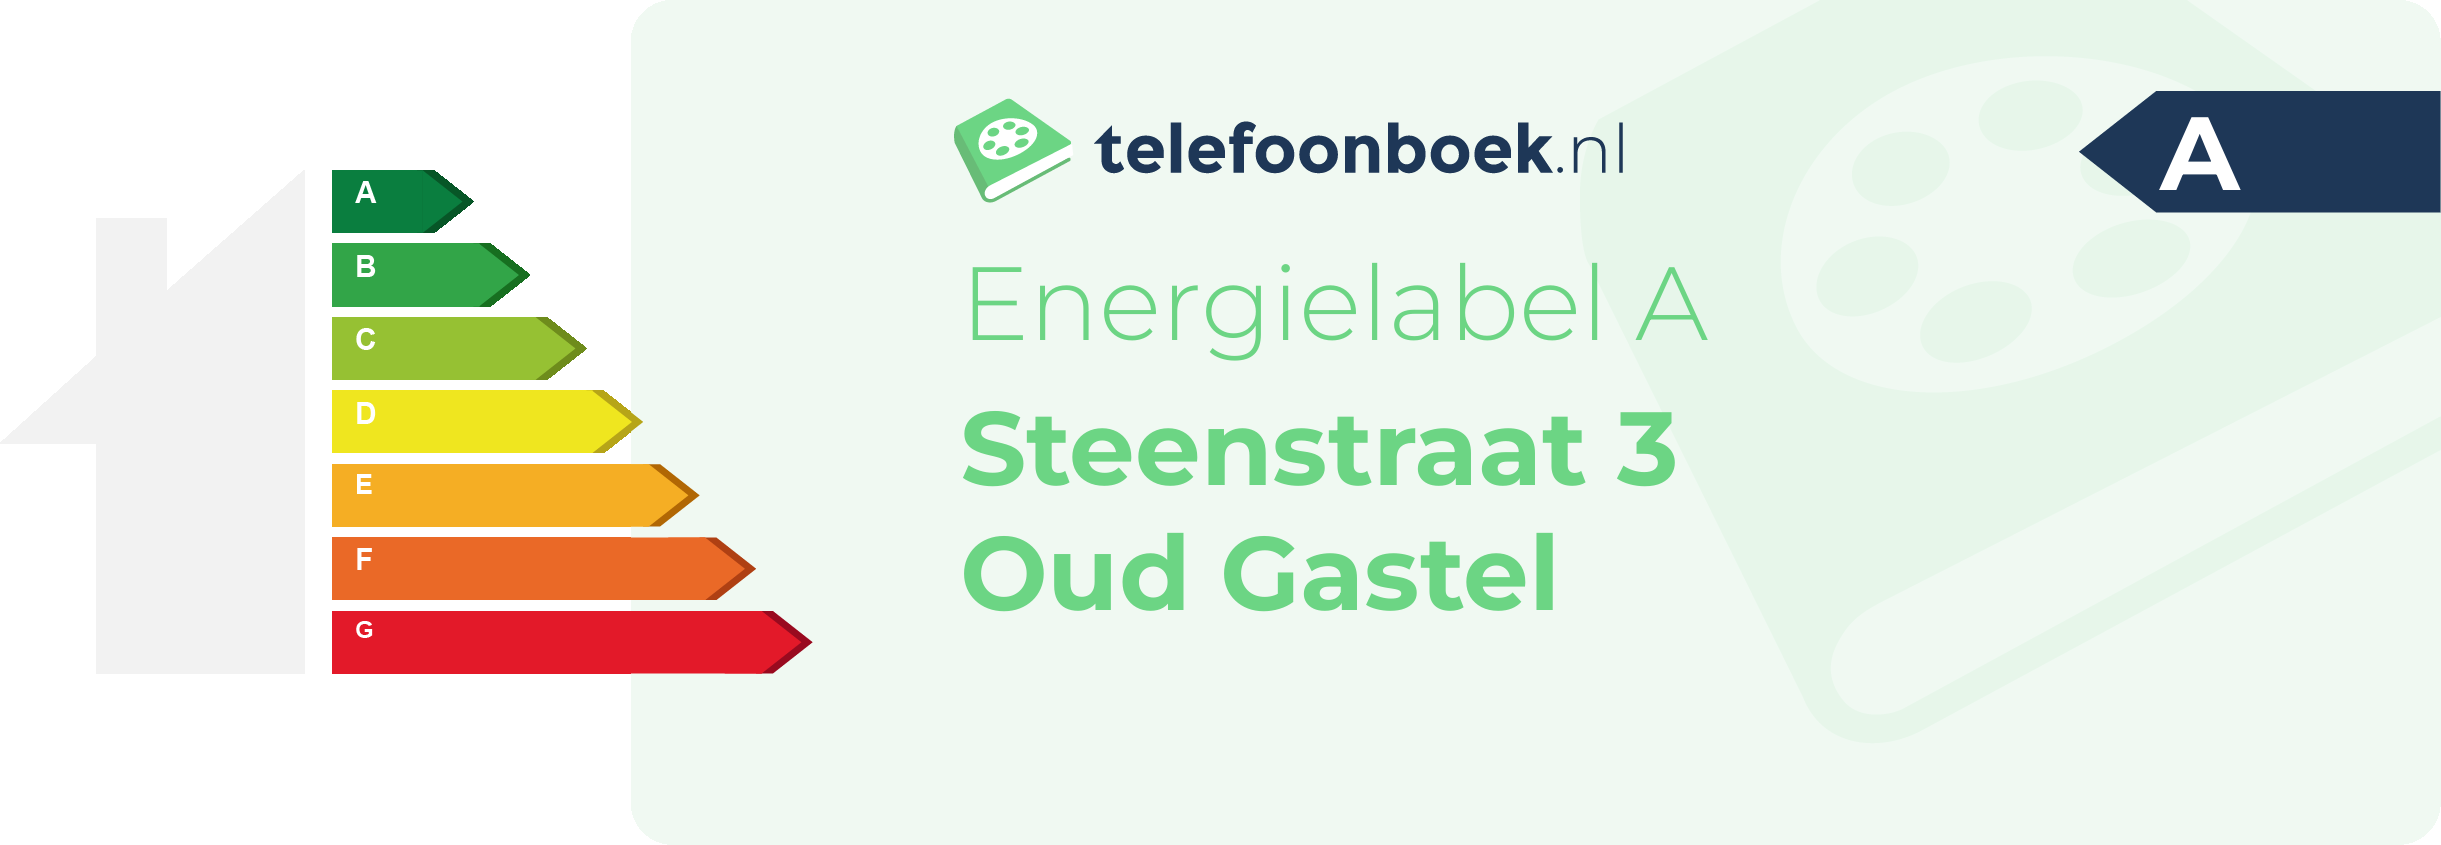 Energielabel Steenstraat 3 Oud Gastel